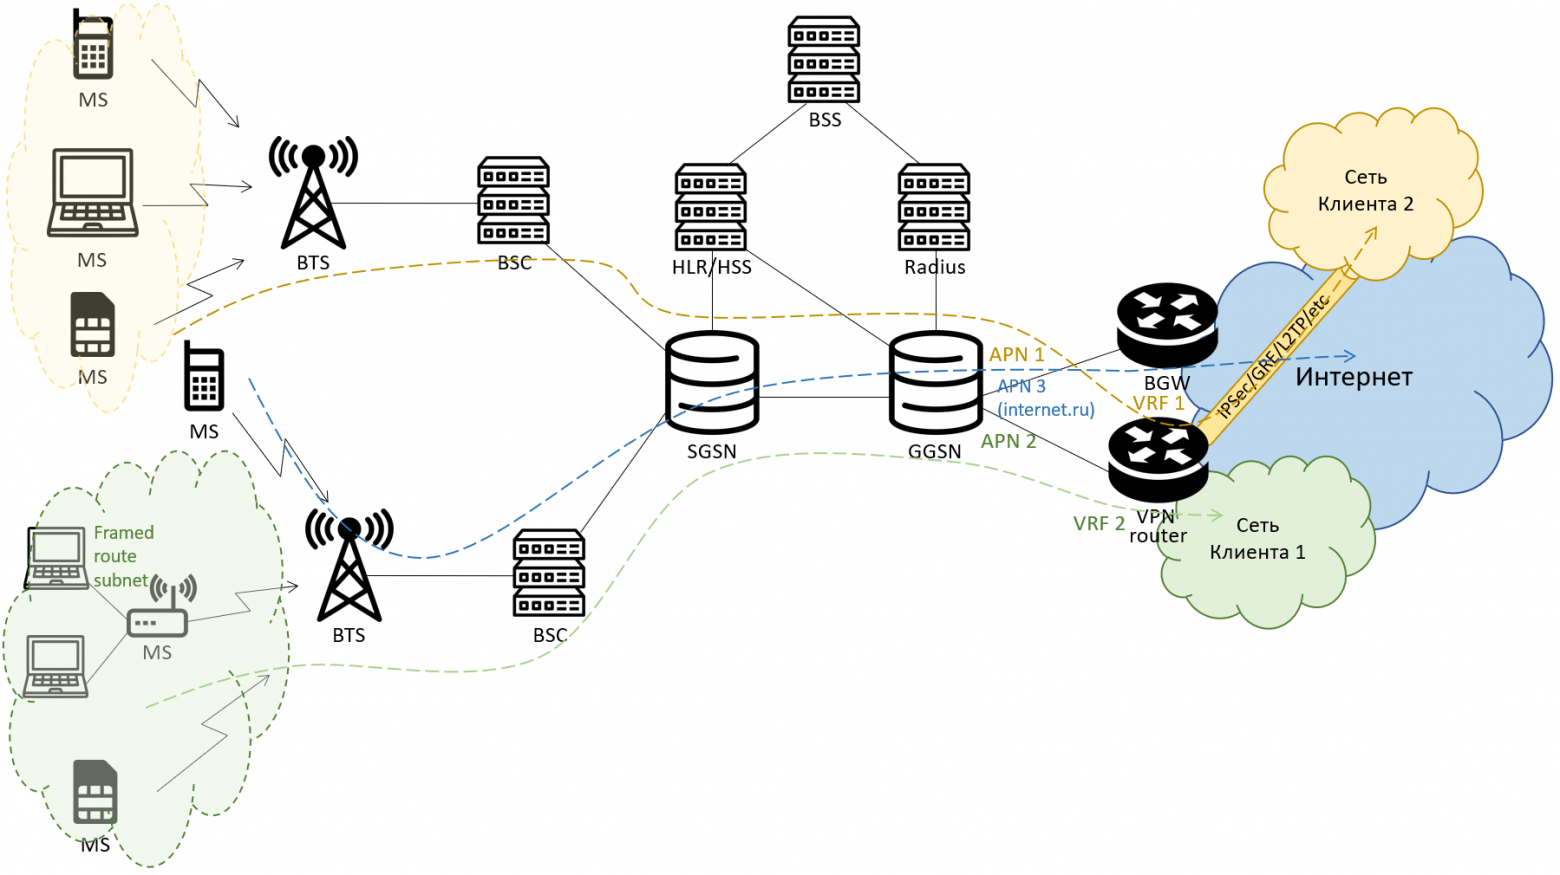 Vpn между сетями. Схема сети 5g. Схема интернет VPN. Схема подключения VPN сети. Схема сетей 5g простая.